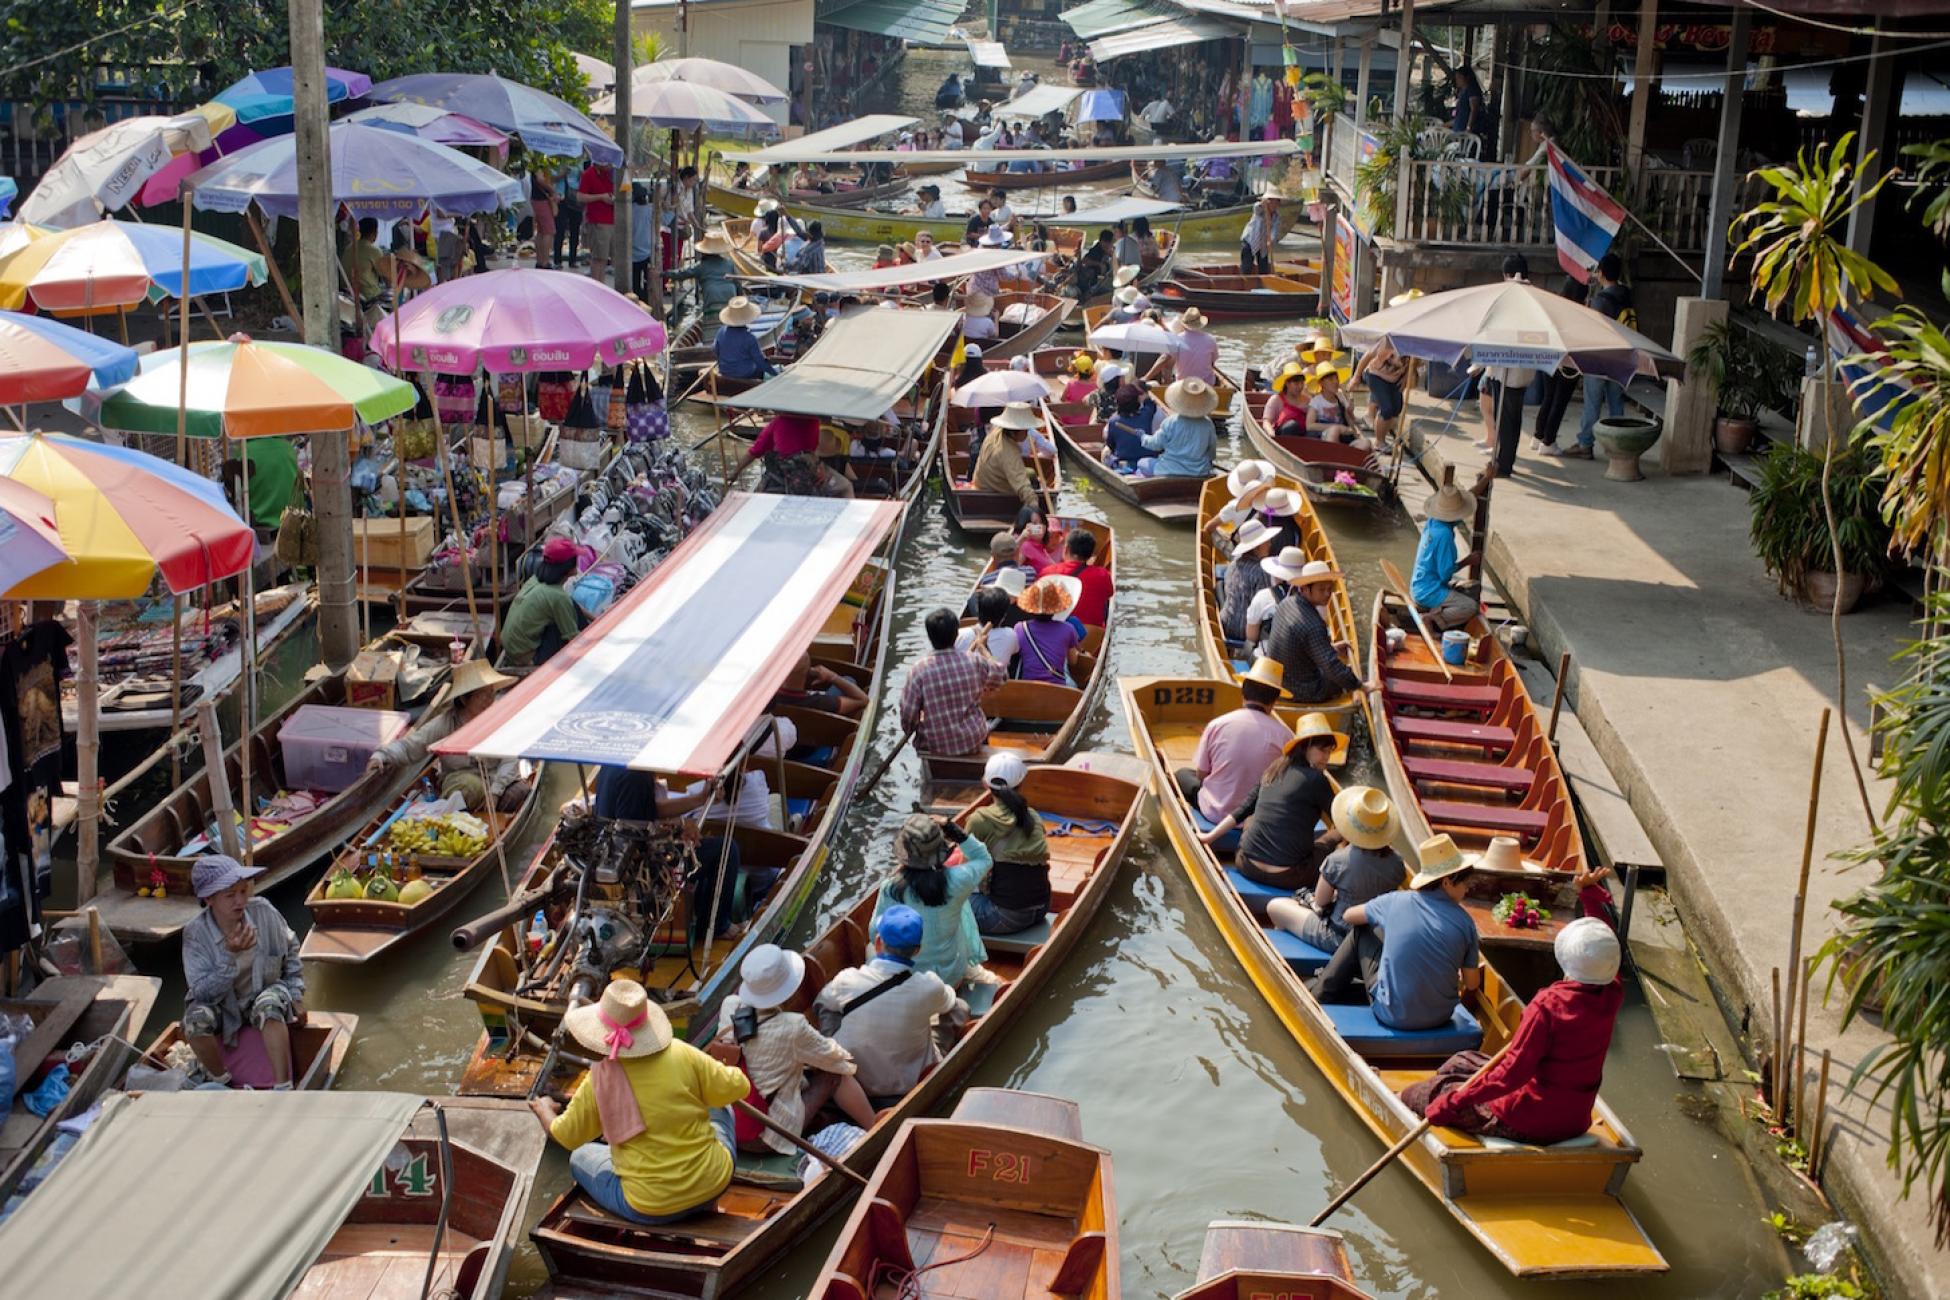 Экскурсии в бангкок из паттайи